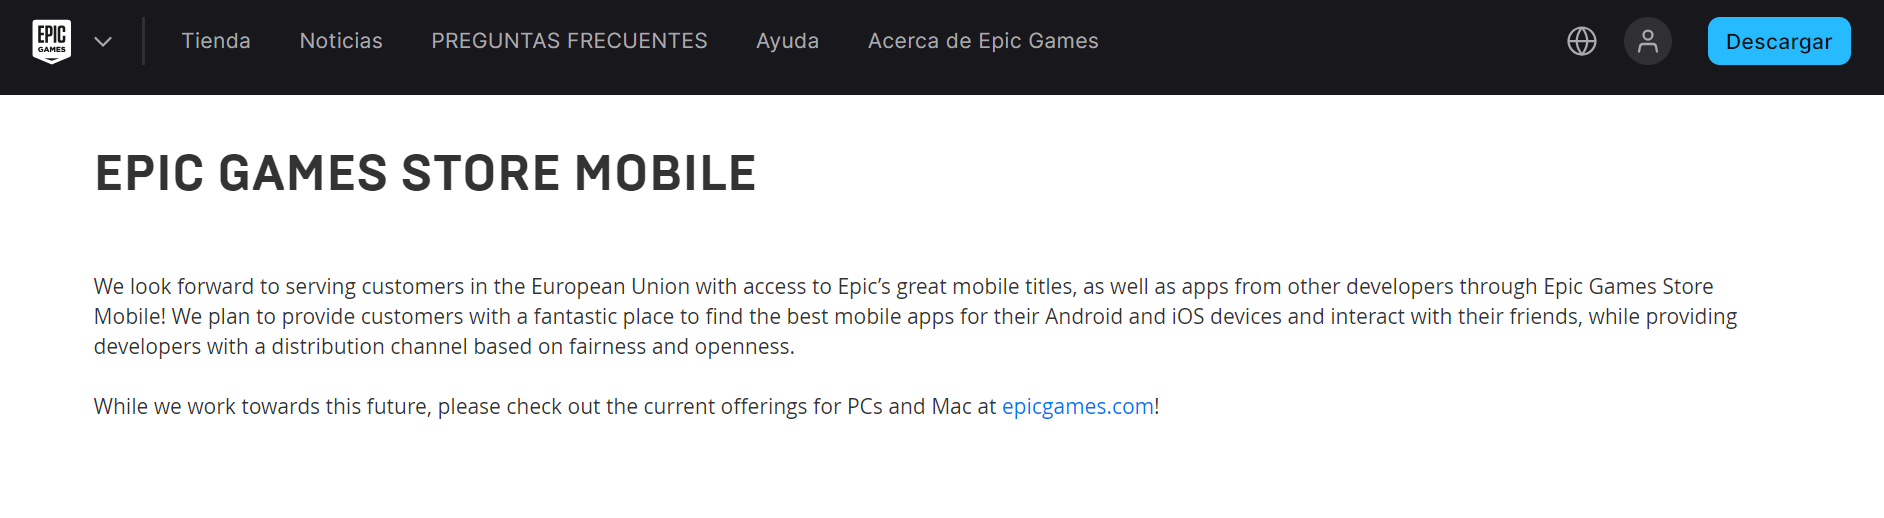 Tienda de juegos épica móvil para Android